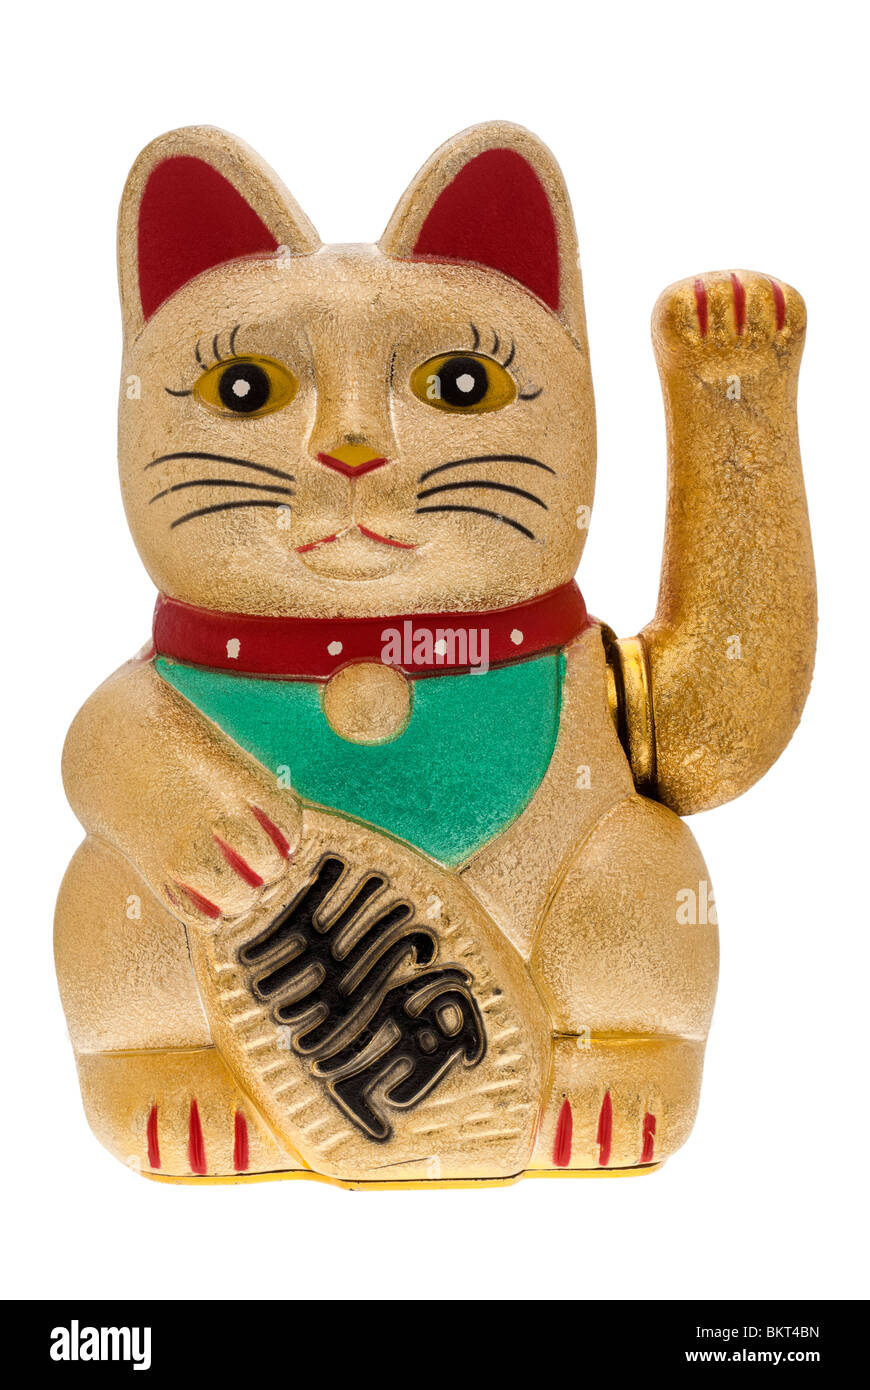 Maneki Neko or Welcoming Cat - 2010 Stock Photo